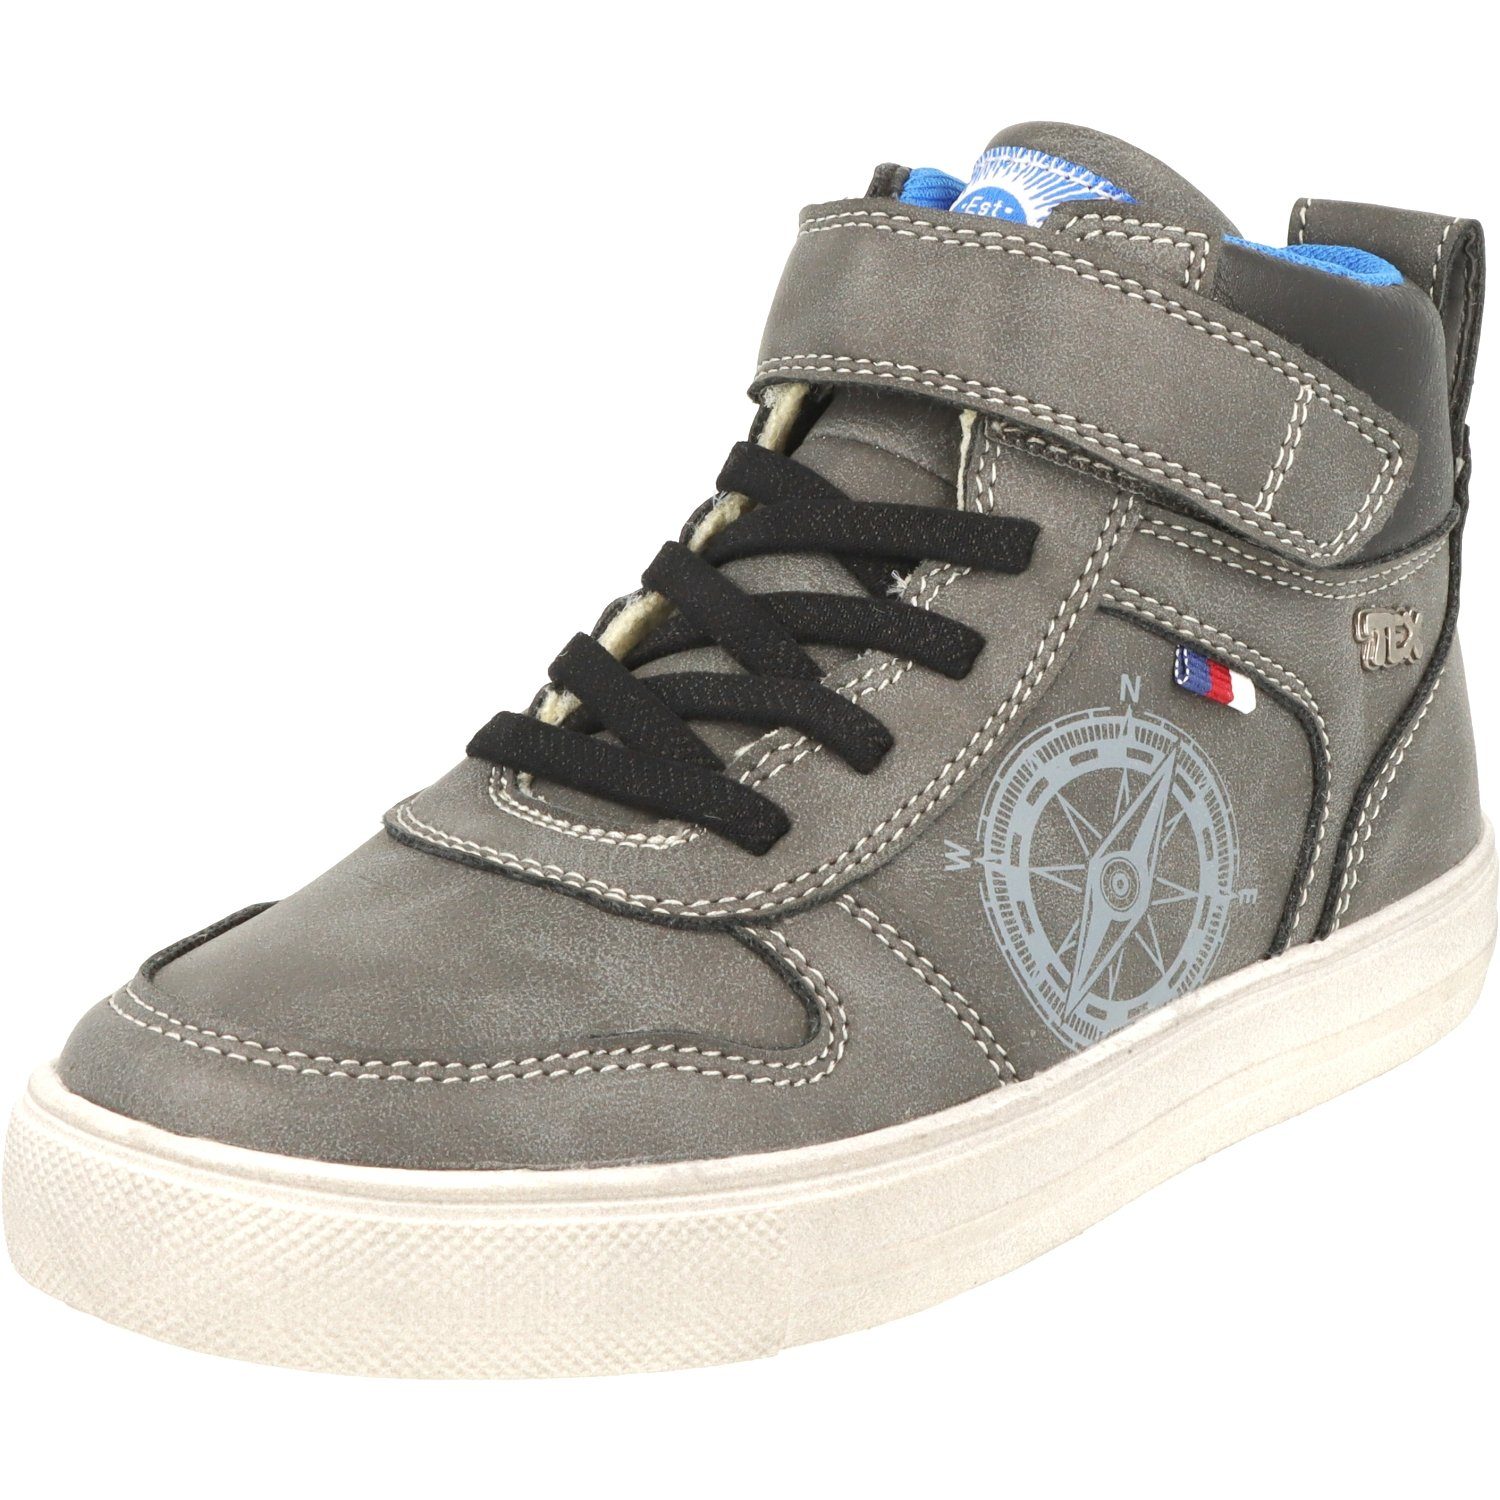 niedrigster Preis online Indigo Jungen Schuhe 451-074 Schnürschuhe Wasserabweisend Hi-Top Dk.Grey Sneaker